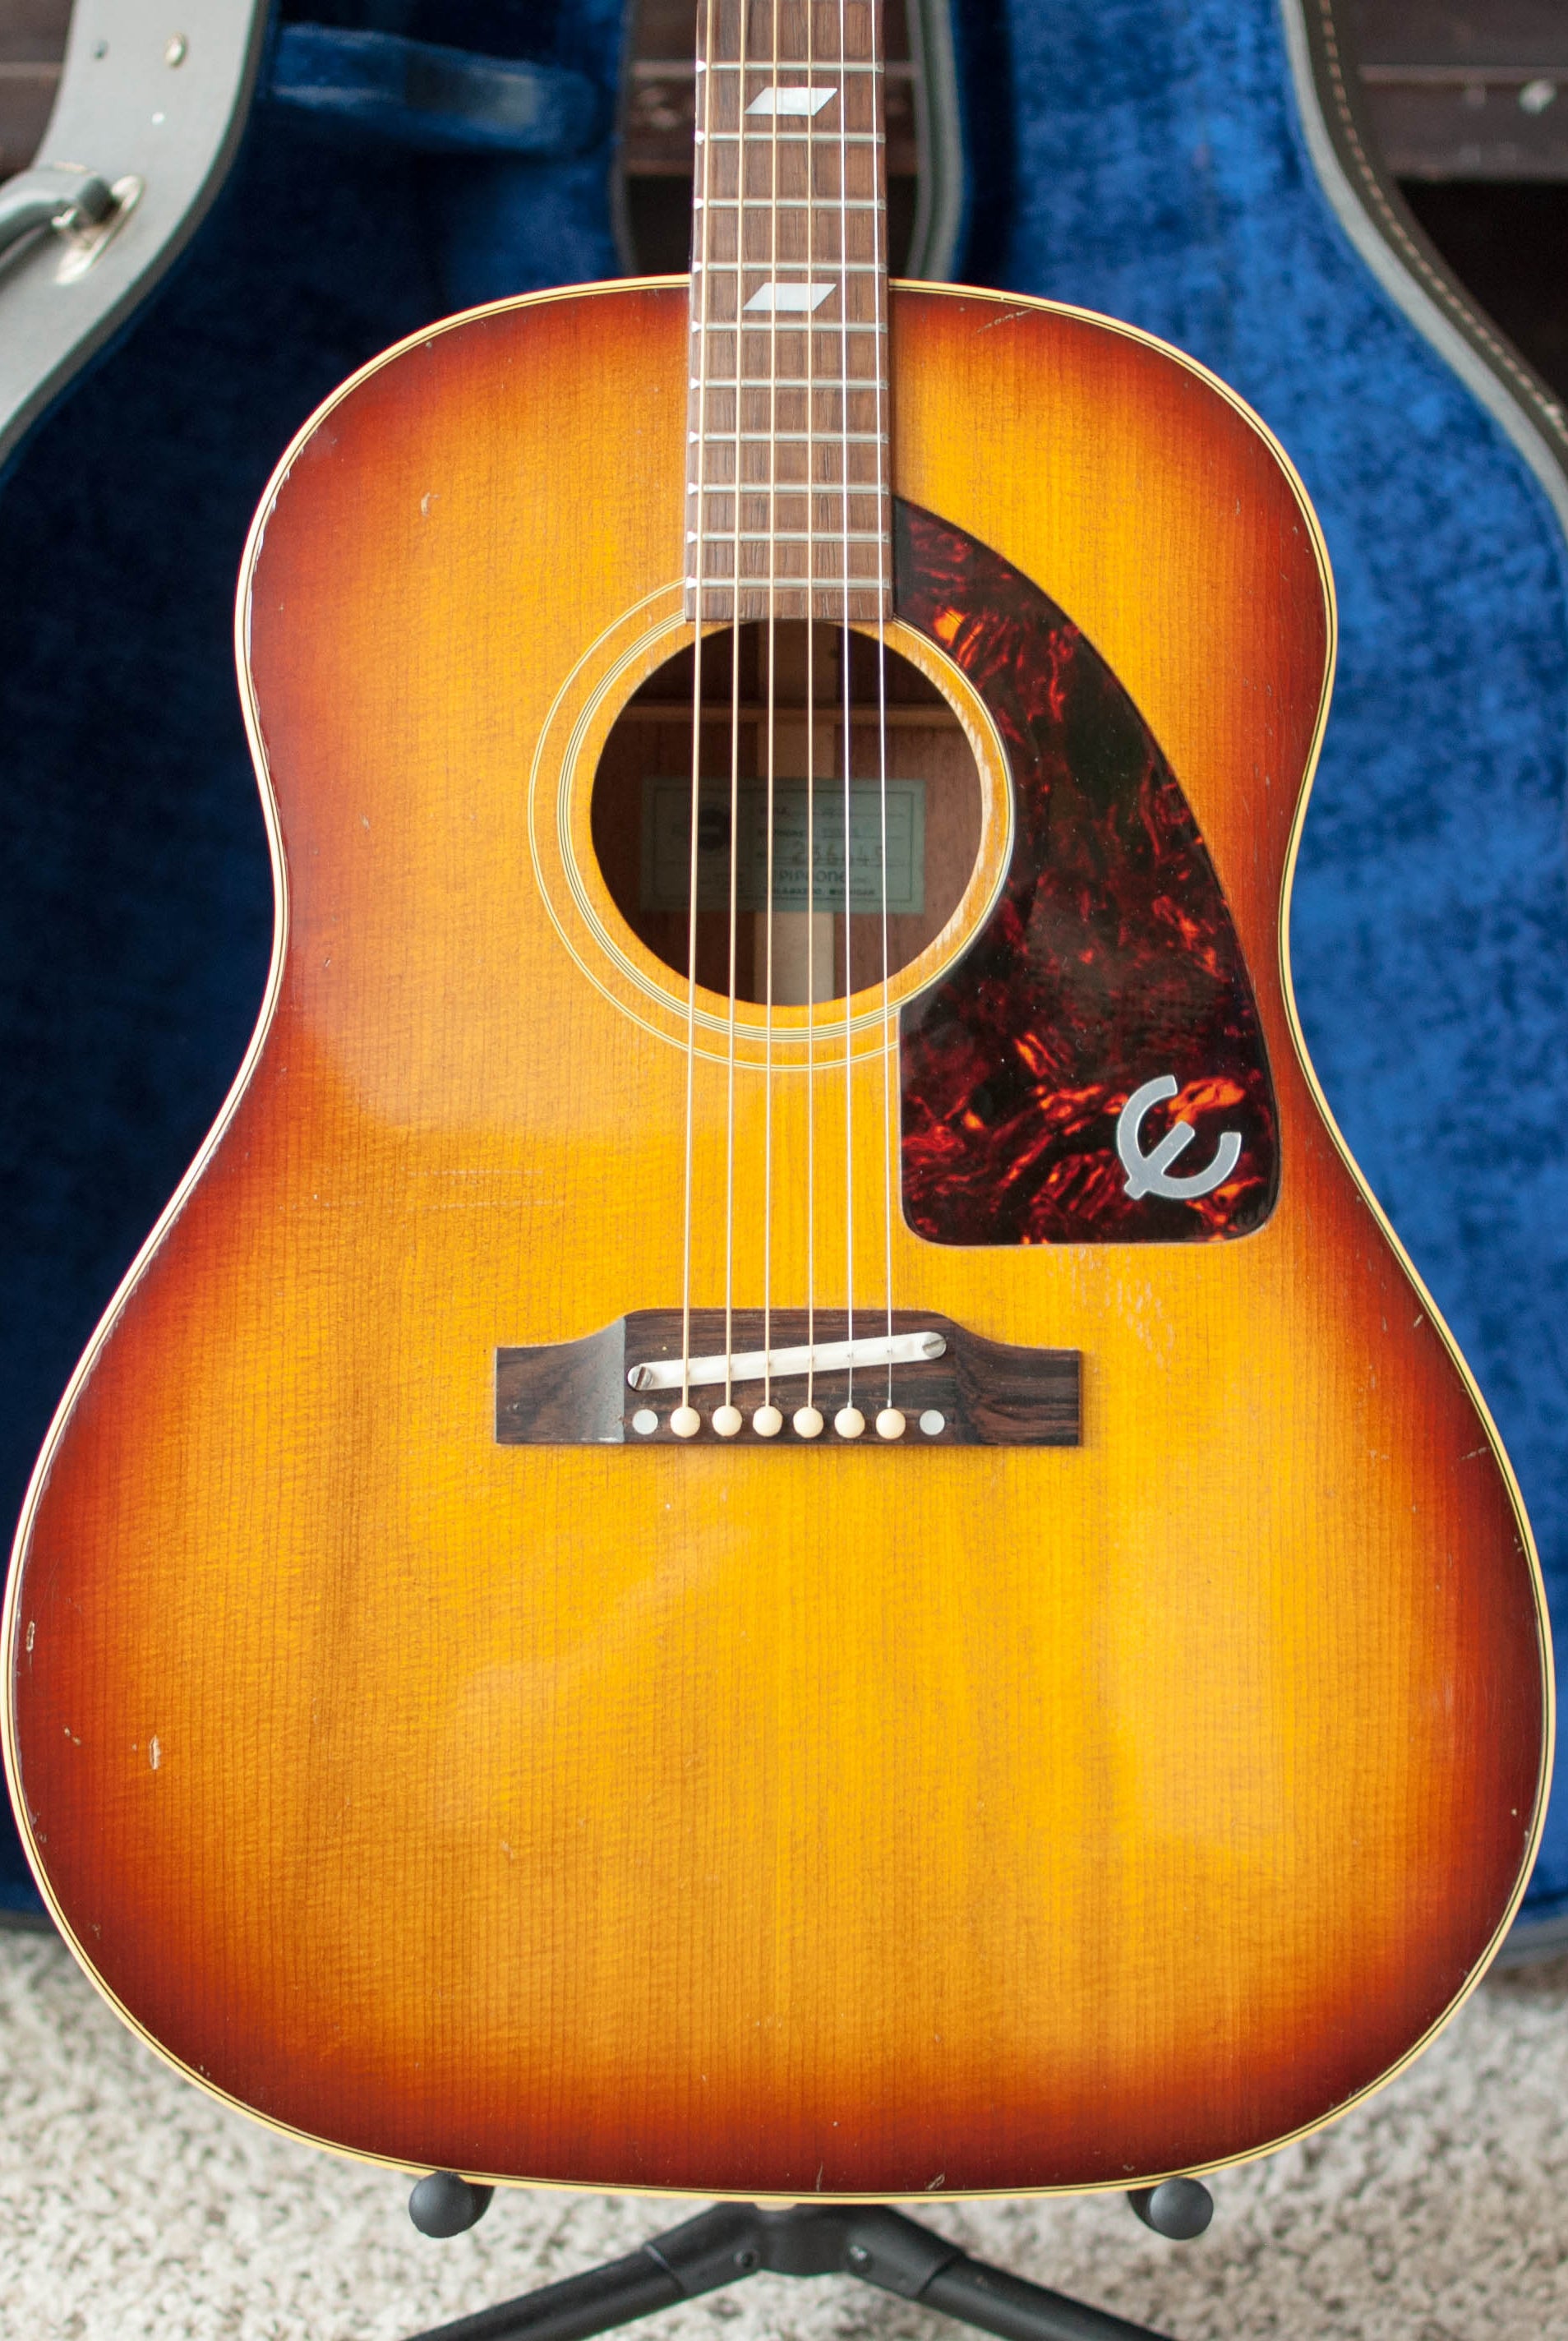 Vintage 1964 Epiphone FT-79 Texan Sunburst acoustic guitar